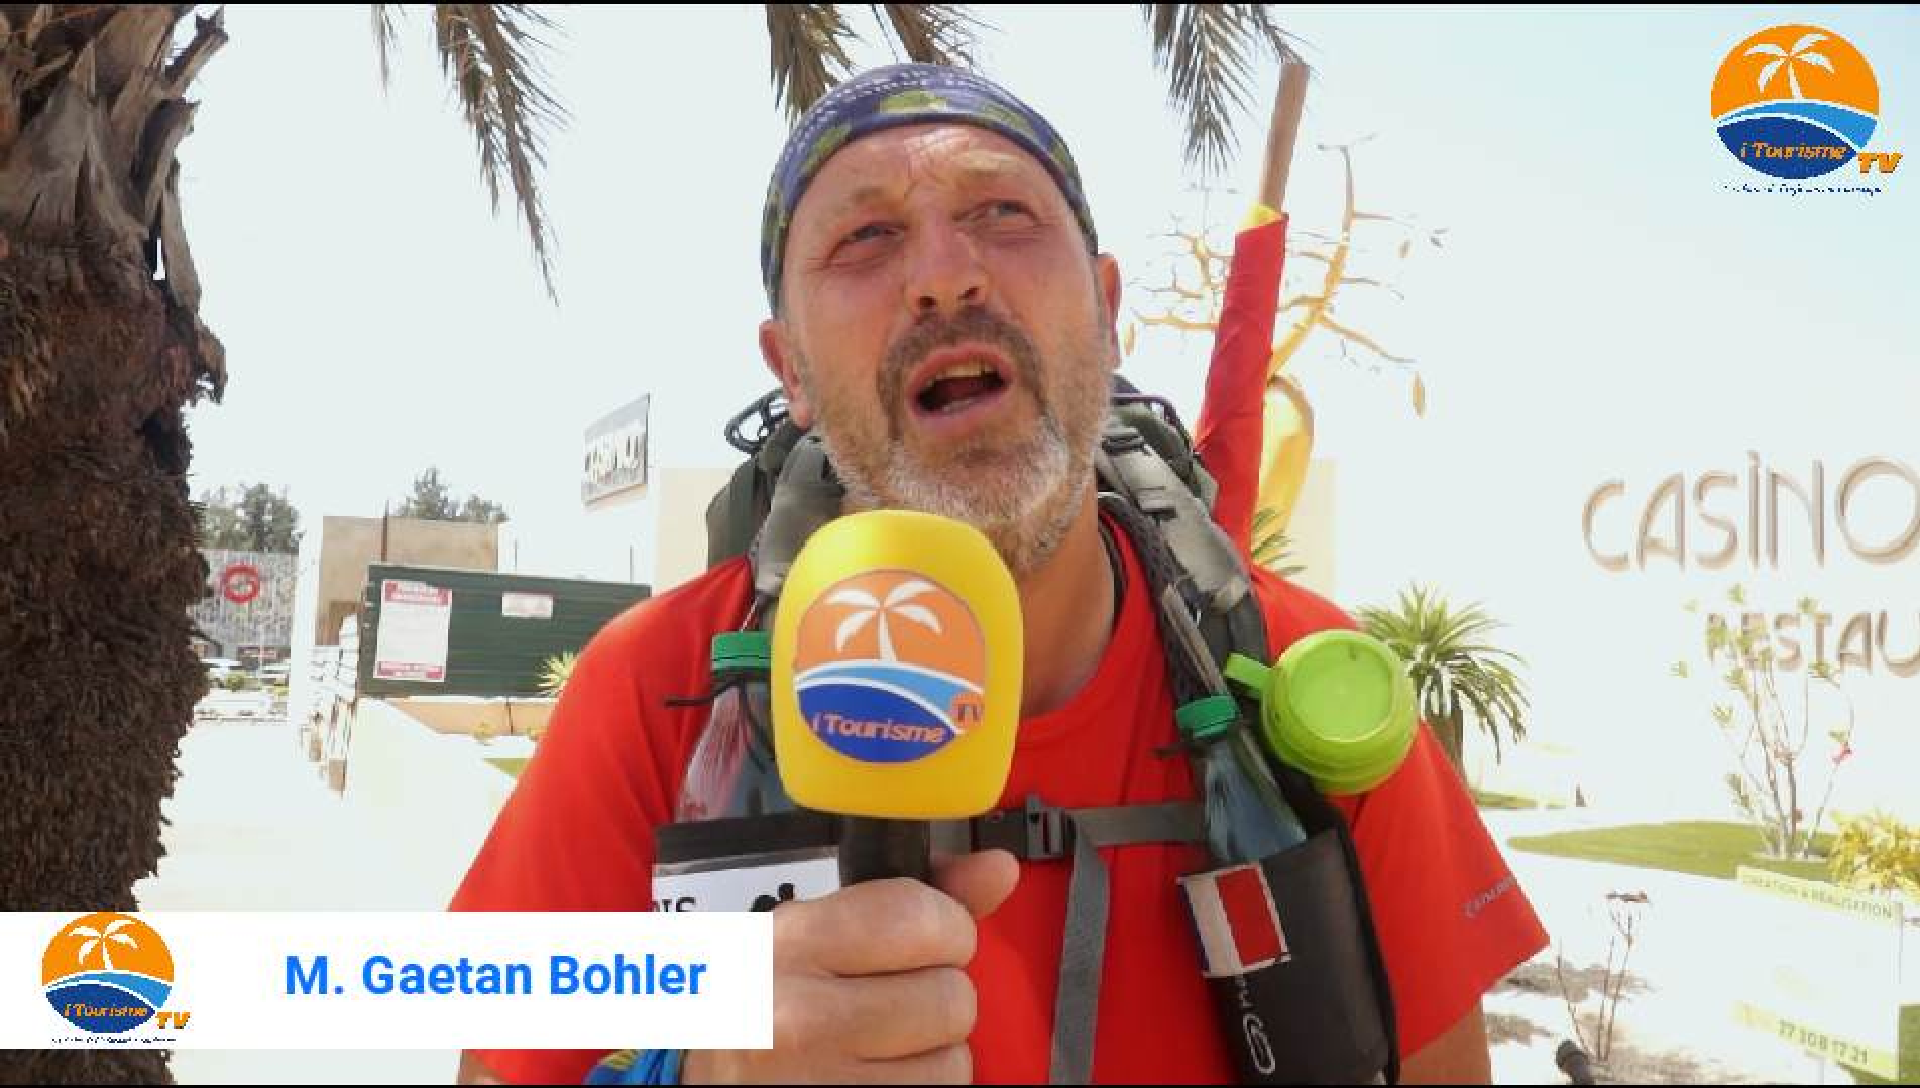 Paris Dakar à pied: Gaetan Bohler a relié les deux capitales en 231 jours soit une distance de 7000 km